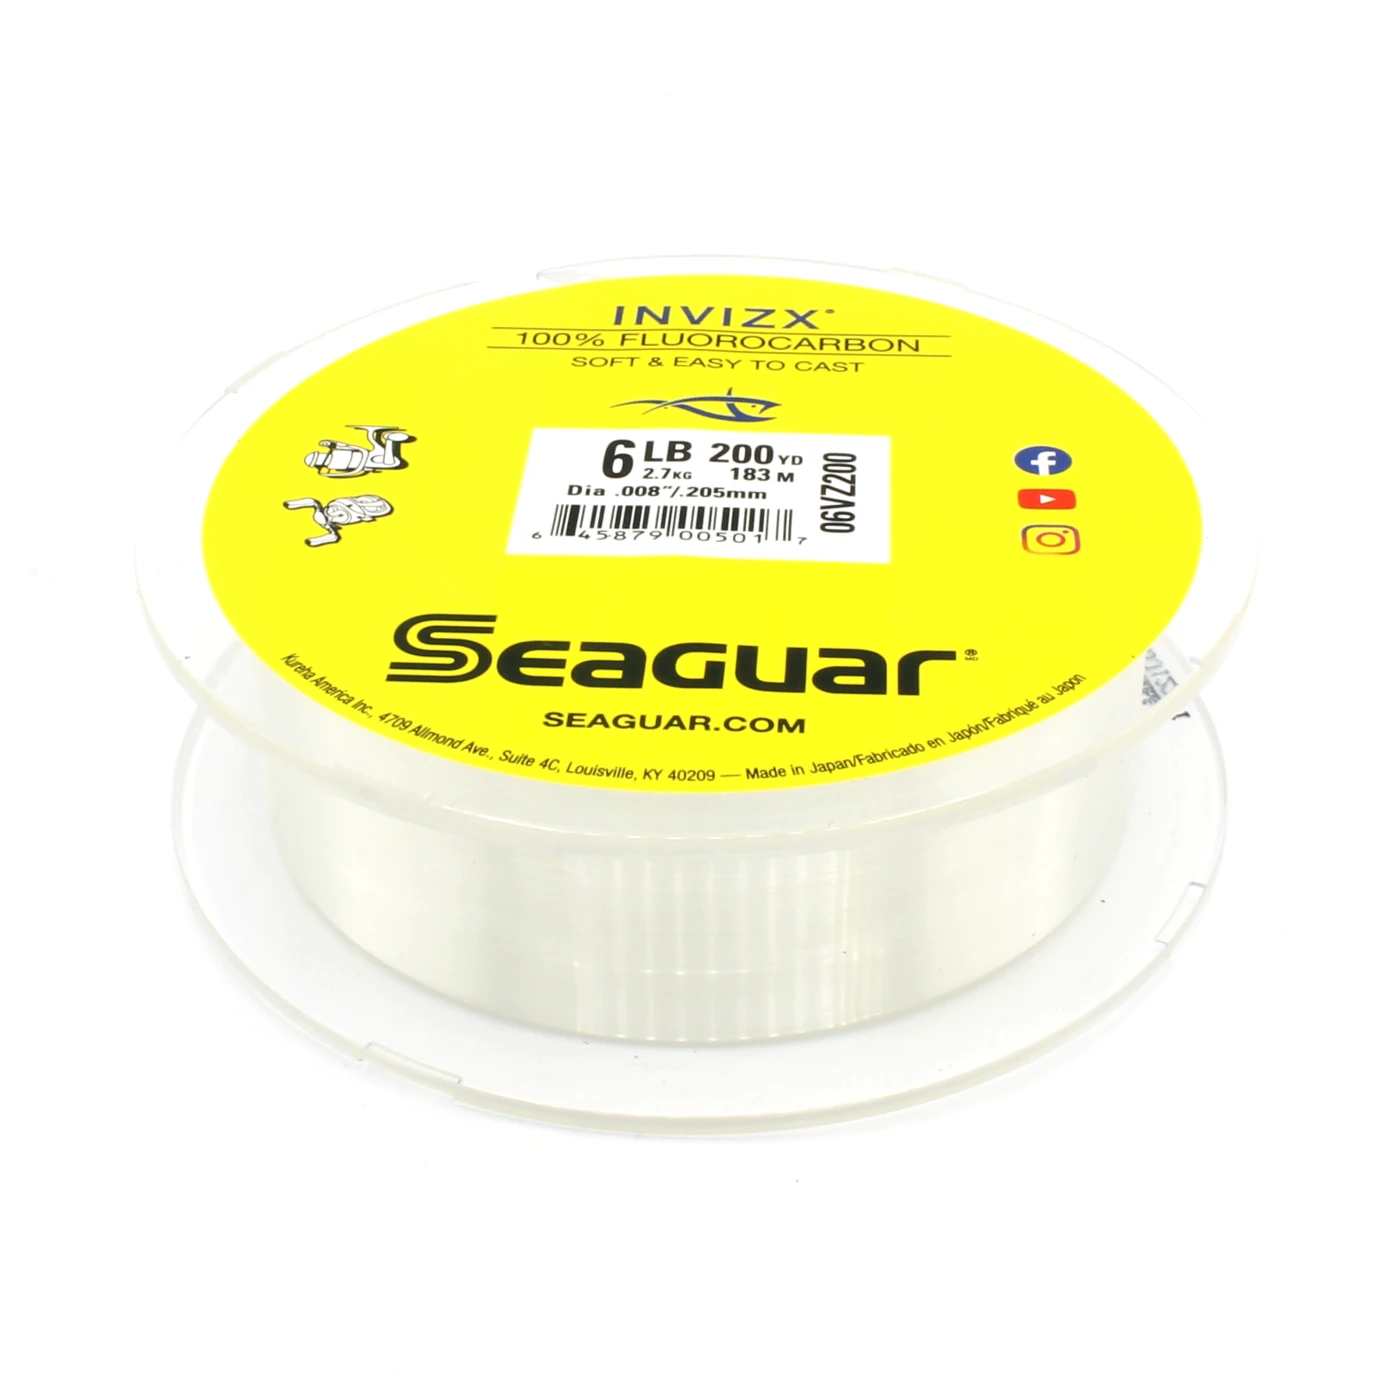 Seaguar InvizX Fluorocarbon Line 15lb 200yd